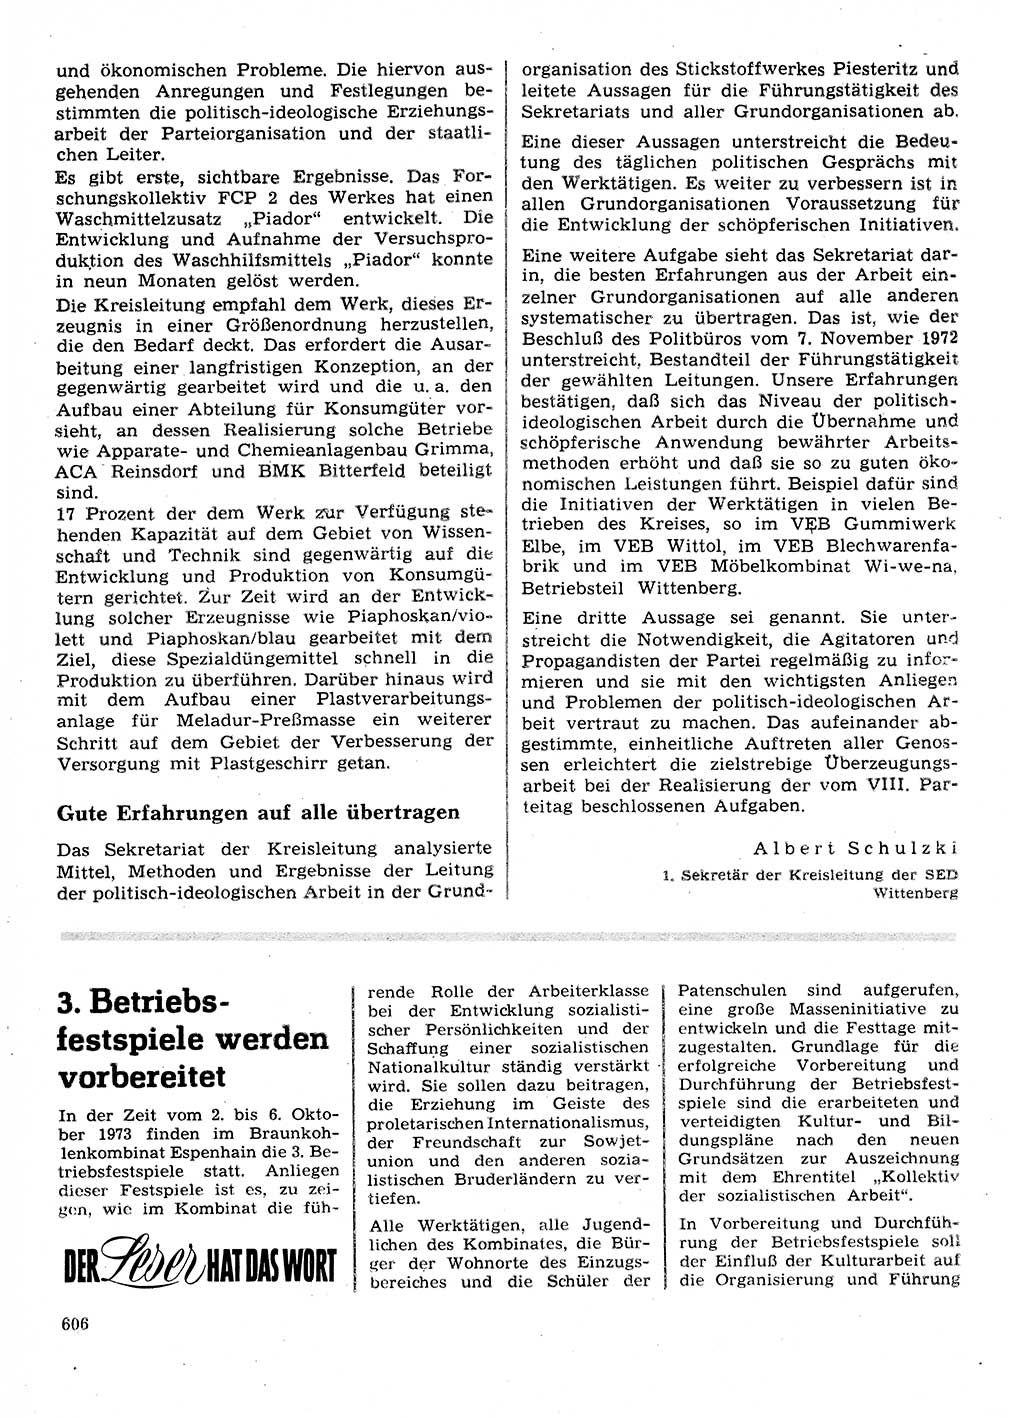 Neuer Weg (NW), Organ des Zentralkomitees (ZK) der SED (Sozialistische Einheitspartei Deutschlands) für Fragen des Parteilebens, 28. Jahrgang [Deutsche Demokratische Republik (DDR)] 1973, Seite 606 (NW ZK SED DDR 1973, S. 606)